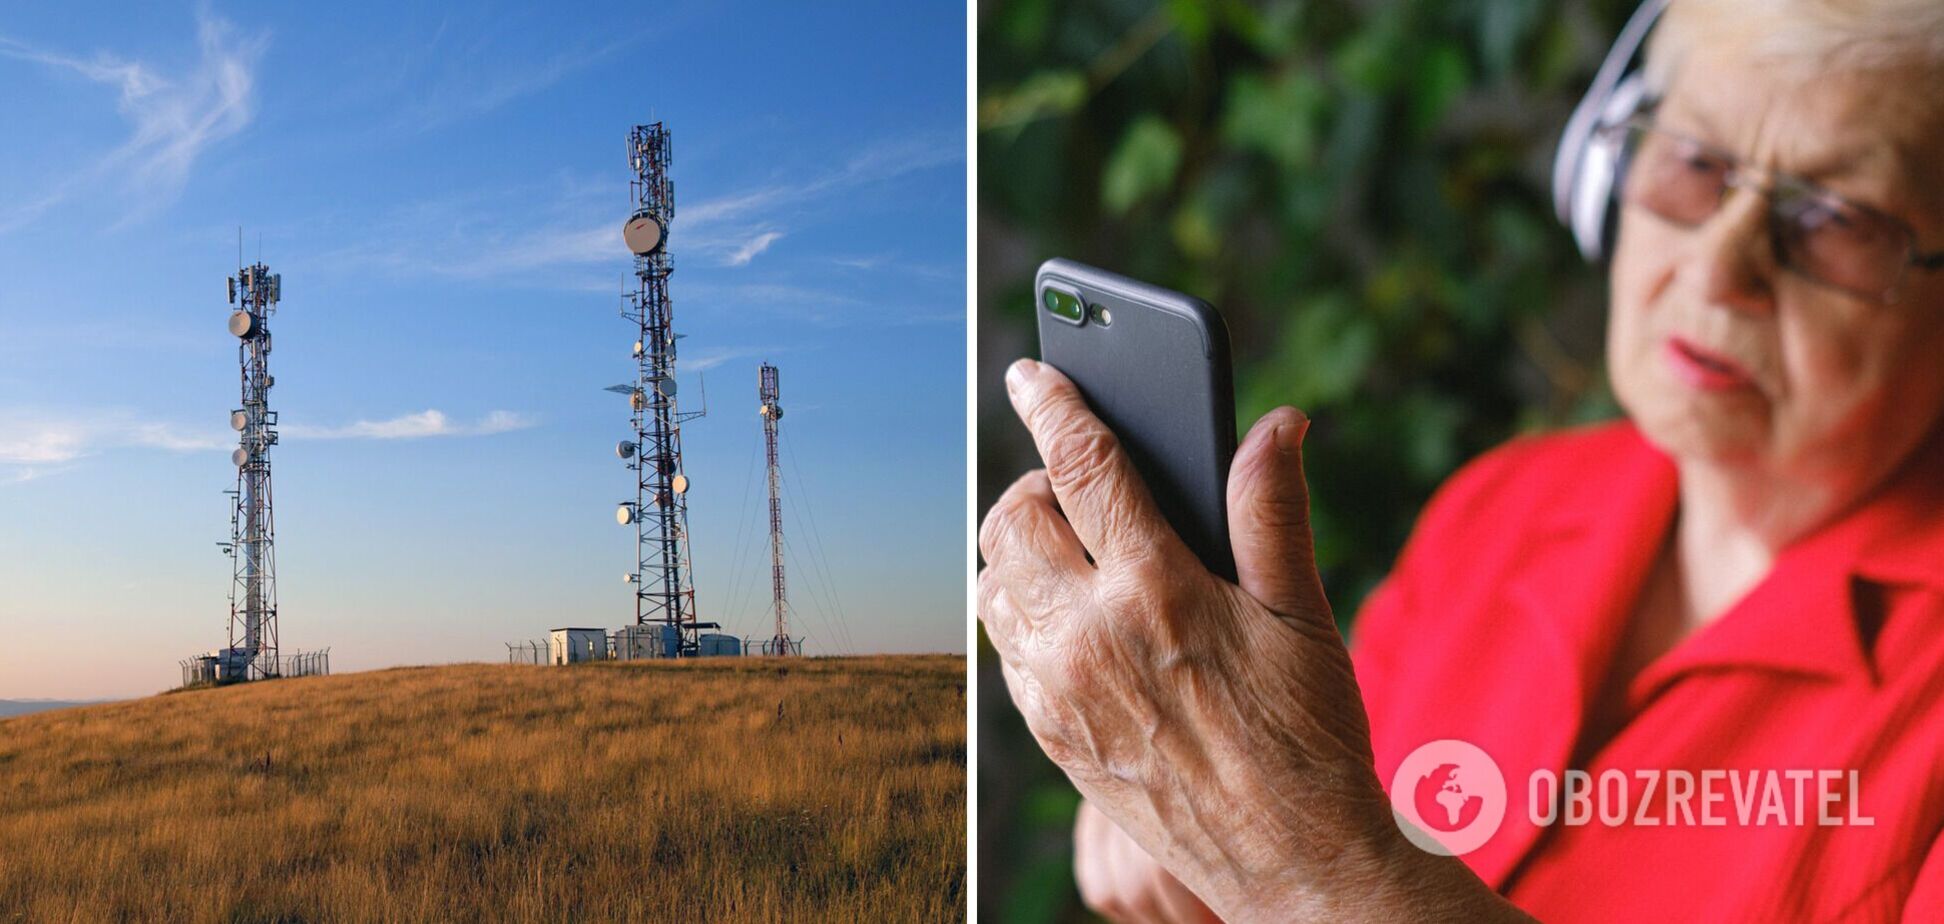 Мобильная связь в селах – необходимое условие для реализации задумки Зеленского